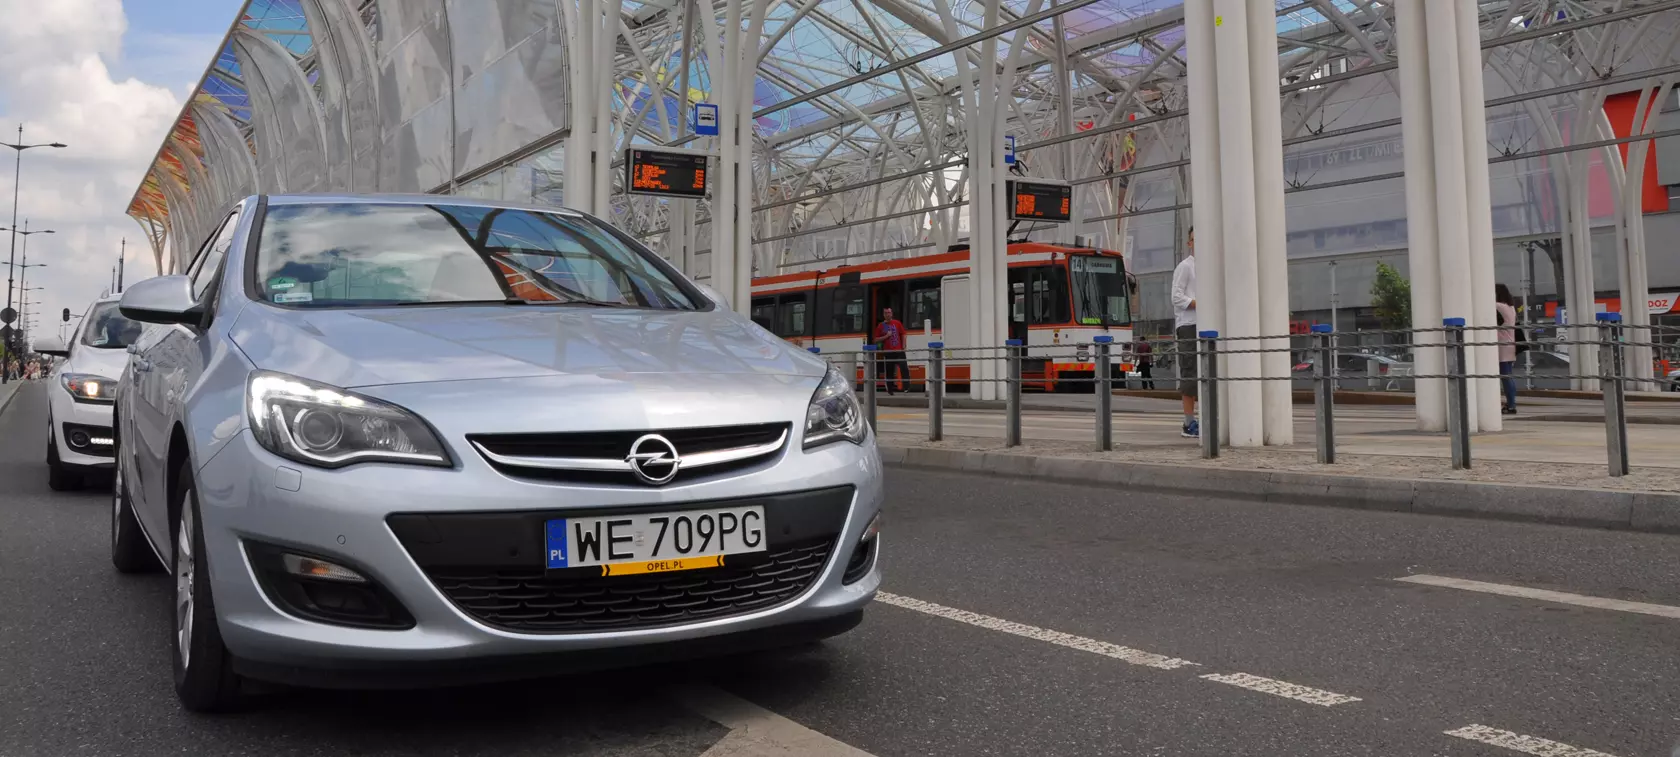 Opel Astra LPG - bezpotomna?